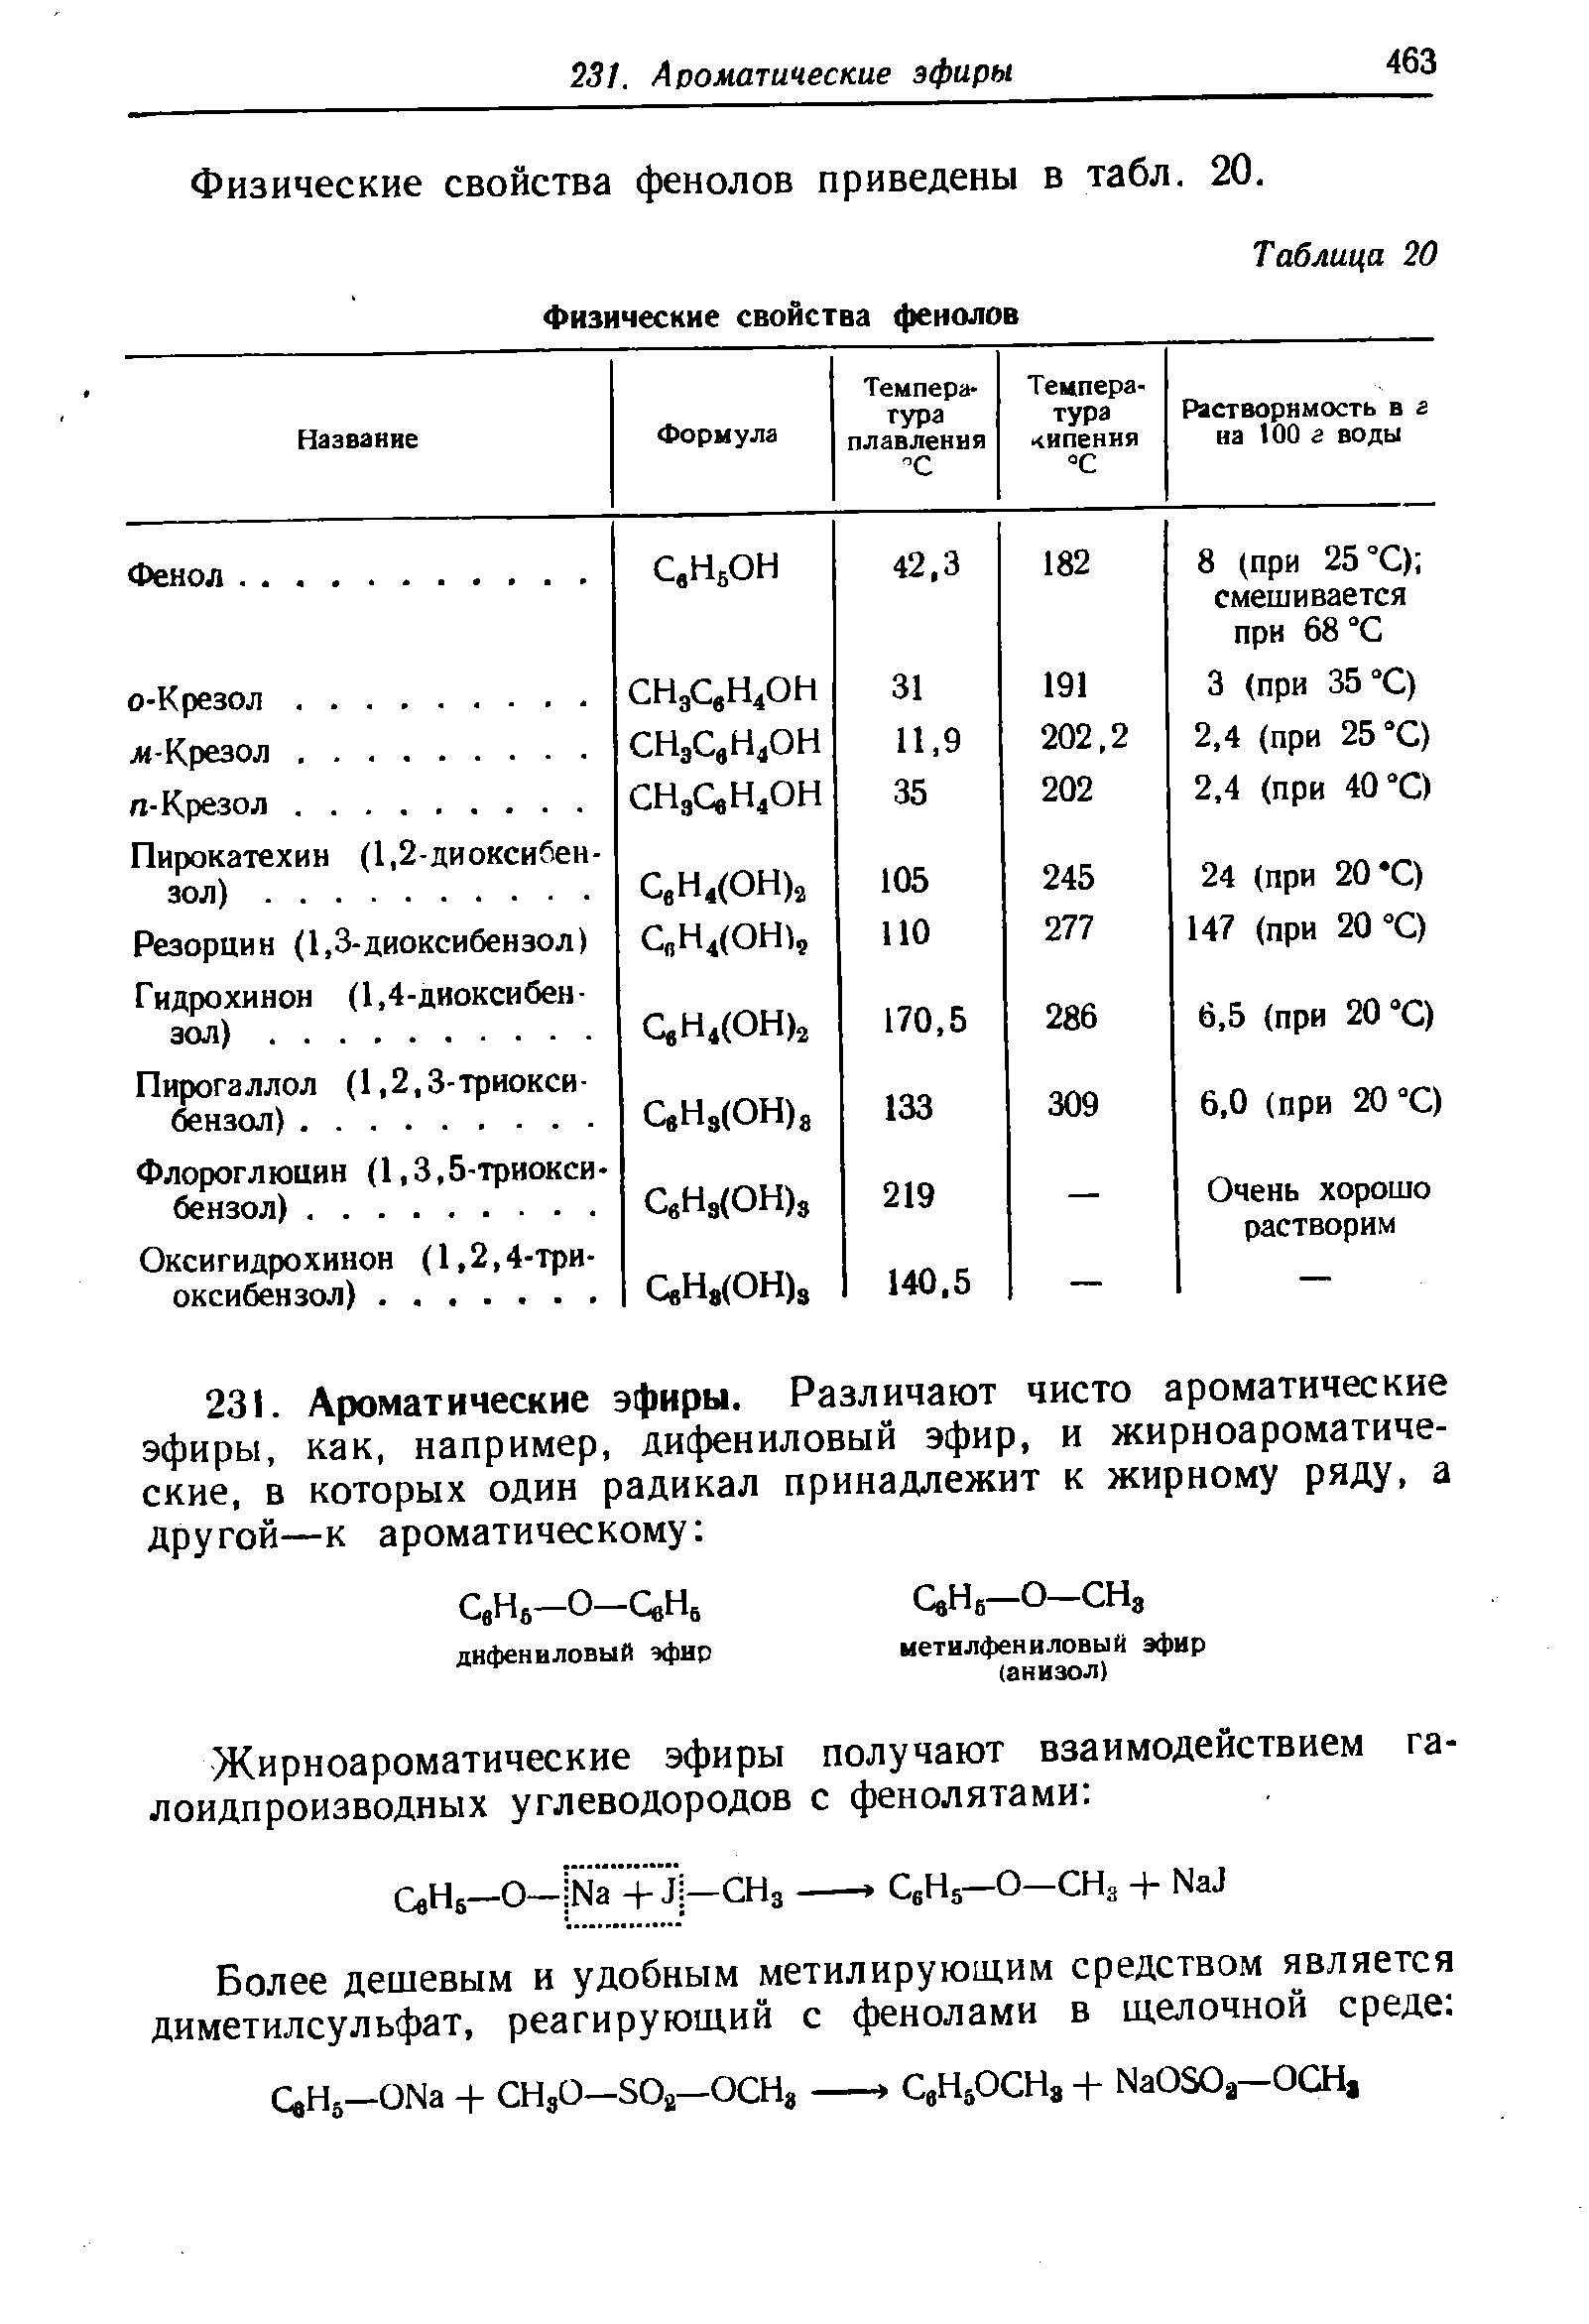 Физические свойства фенолов приведены в табл. 20.